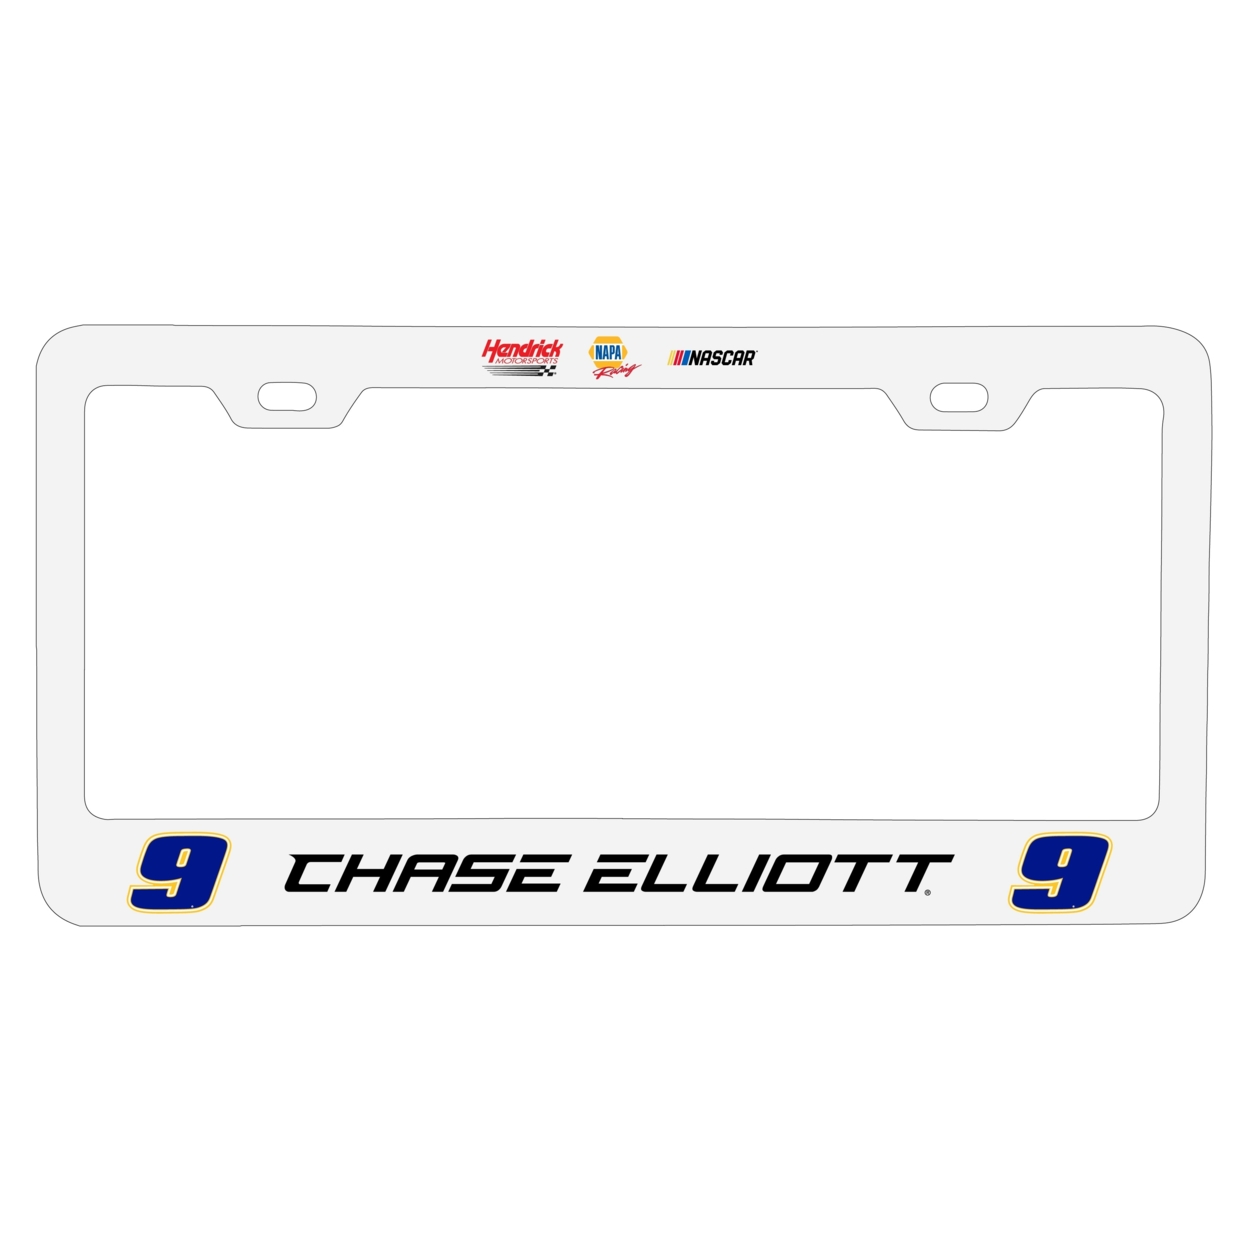 #9 Chase Elliott Officially Licensed Metal License Plate Frame